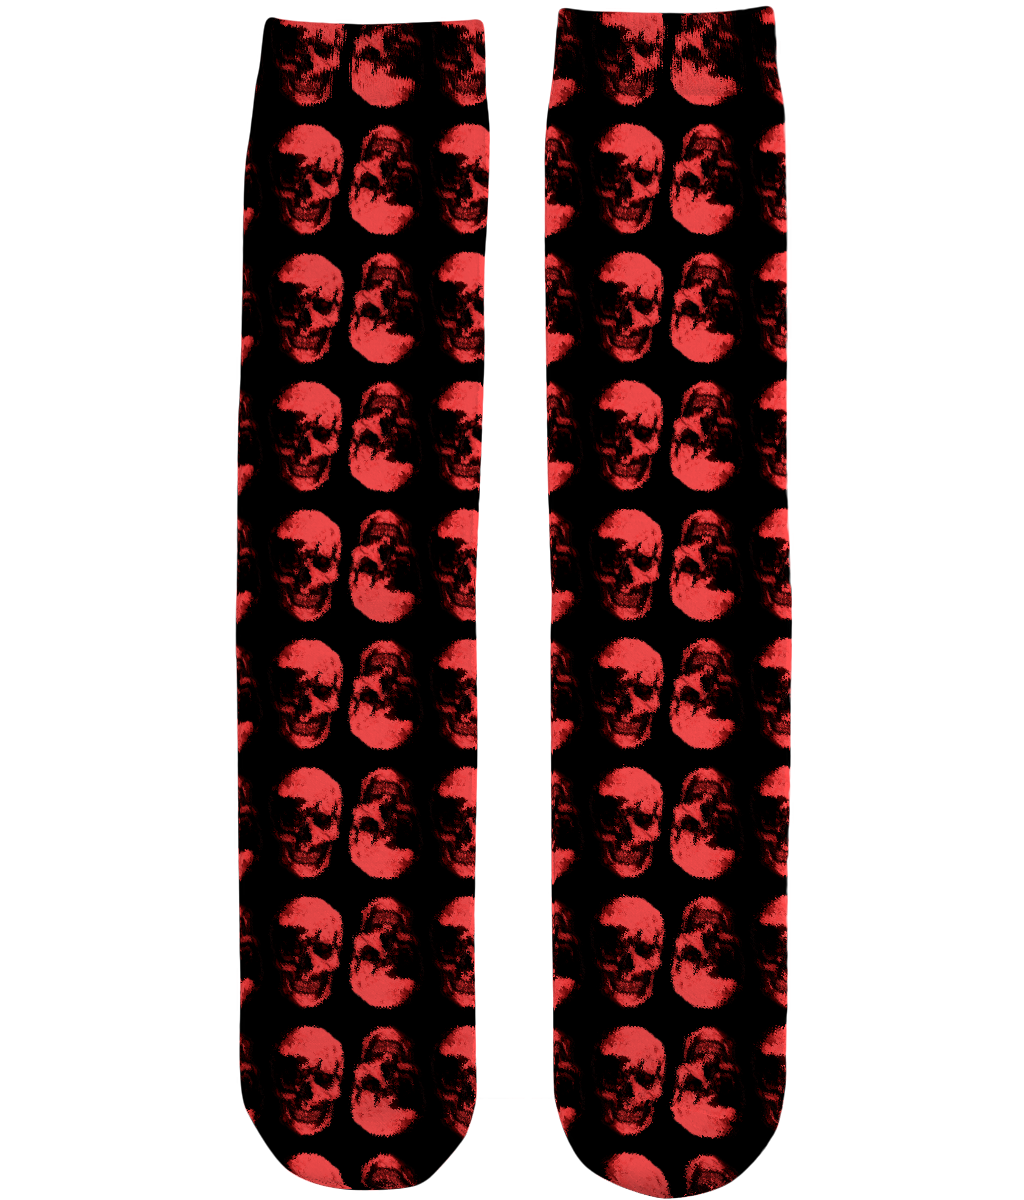 Unisex Subli Tube Socks Red Skulls Opposites by Robert Bowen - Robert Bowen Tees